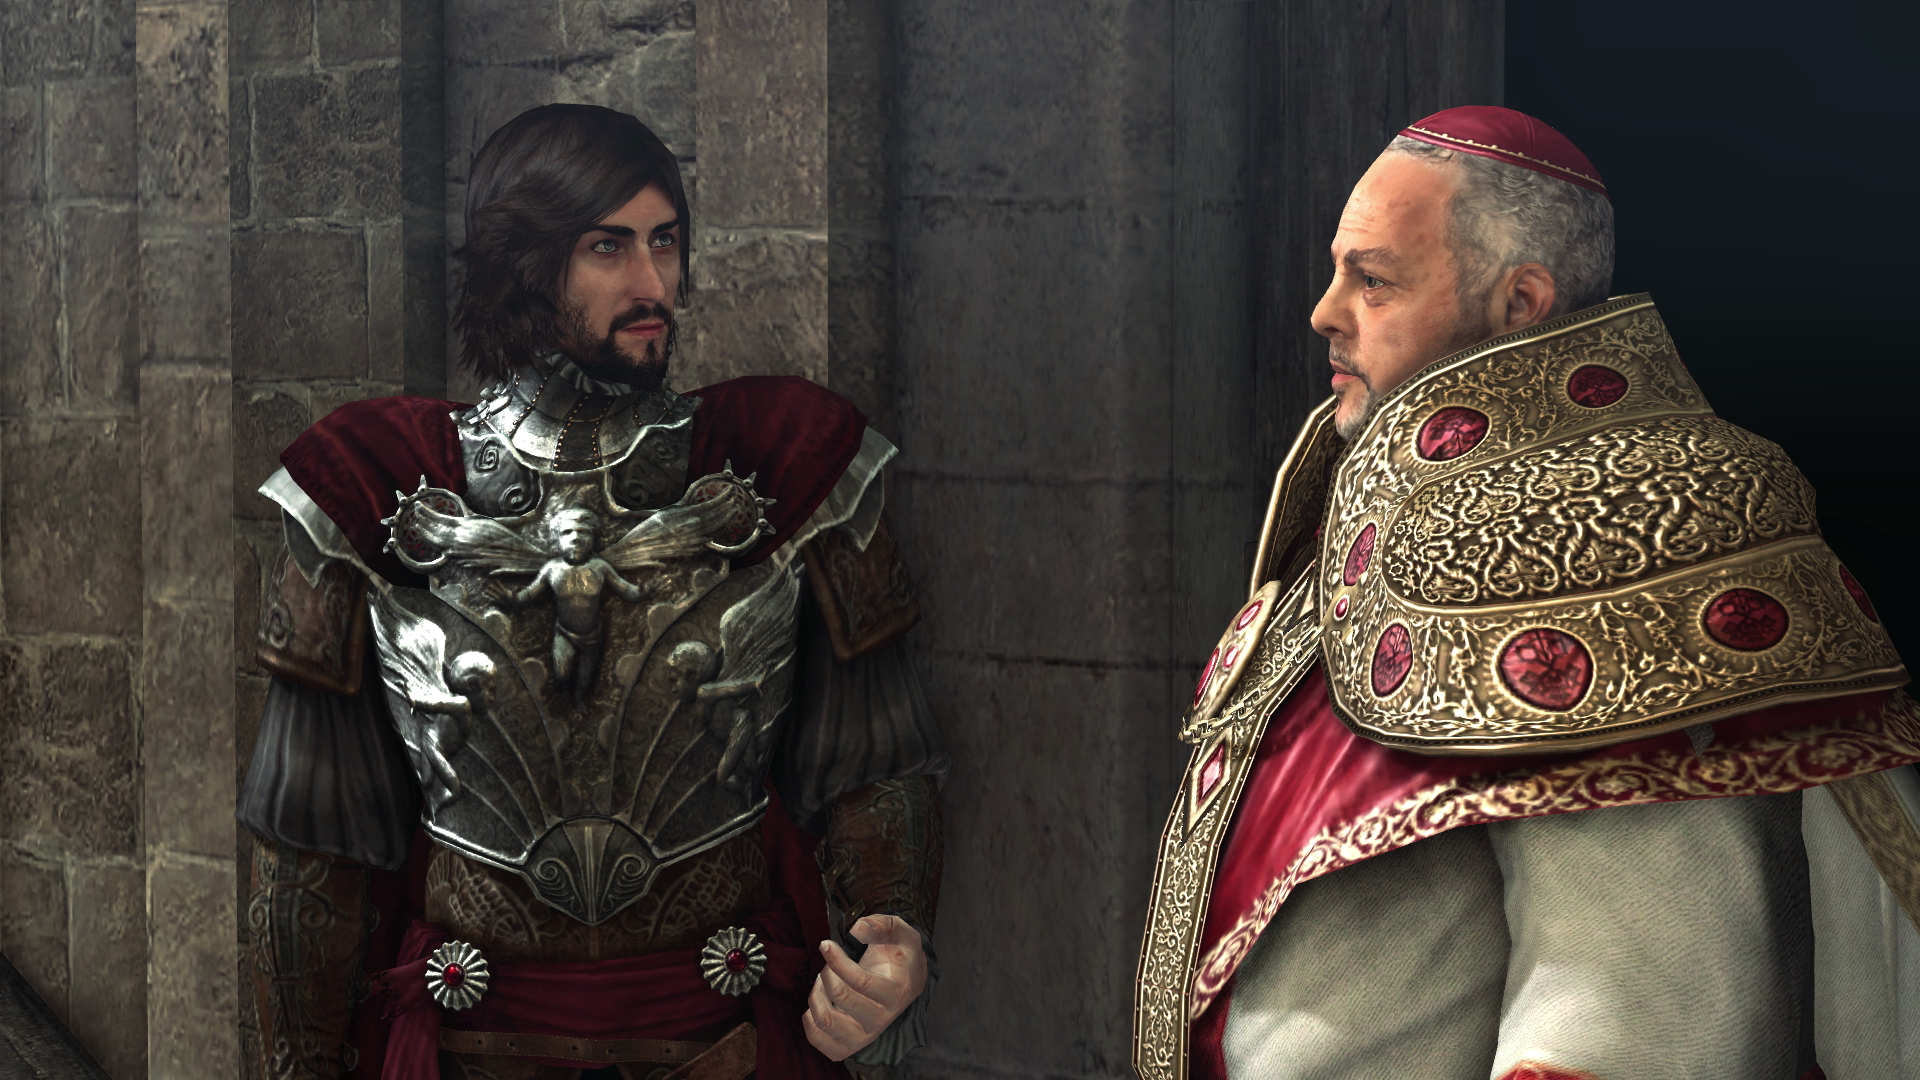 Cesare Borgia - Assassin's Creed Wiki1920 x 1080